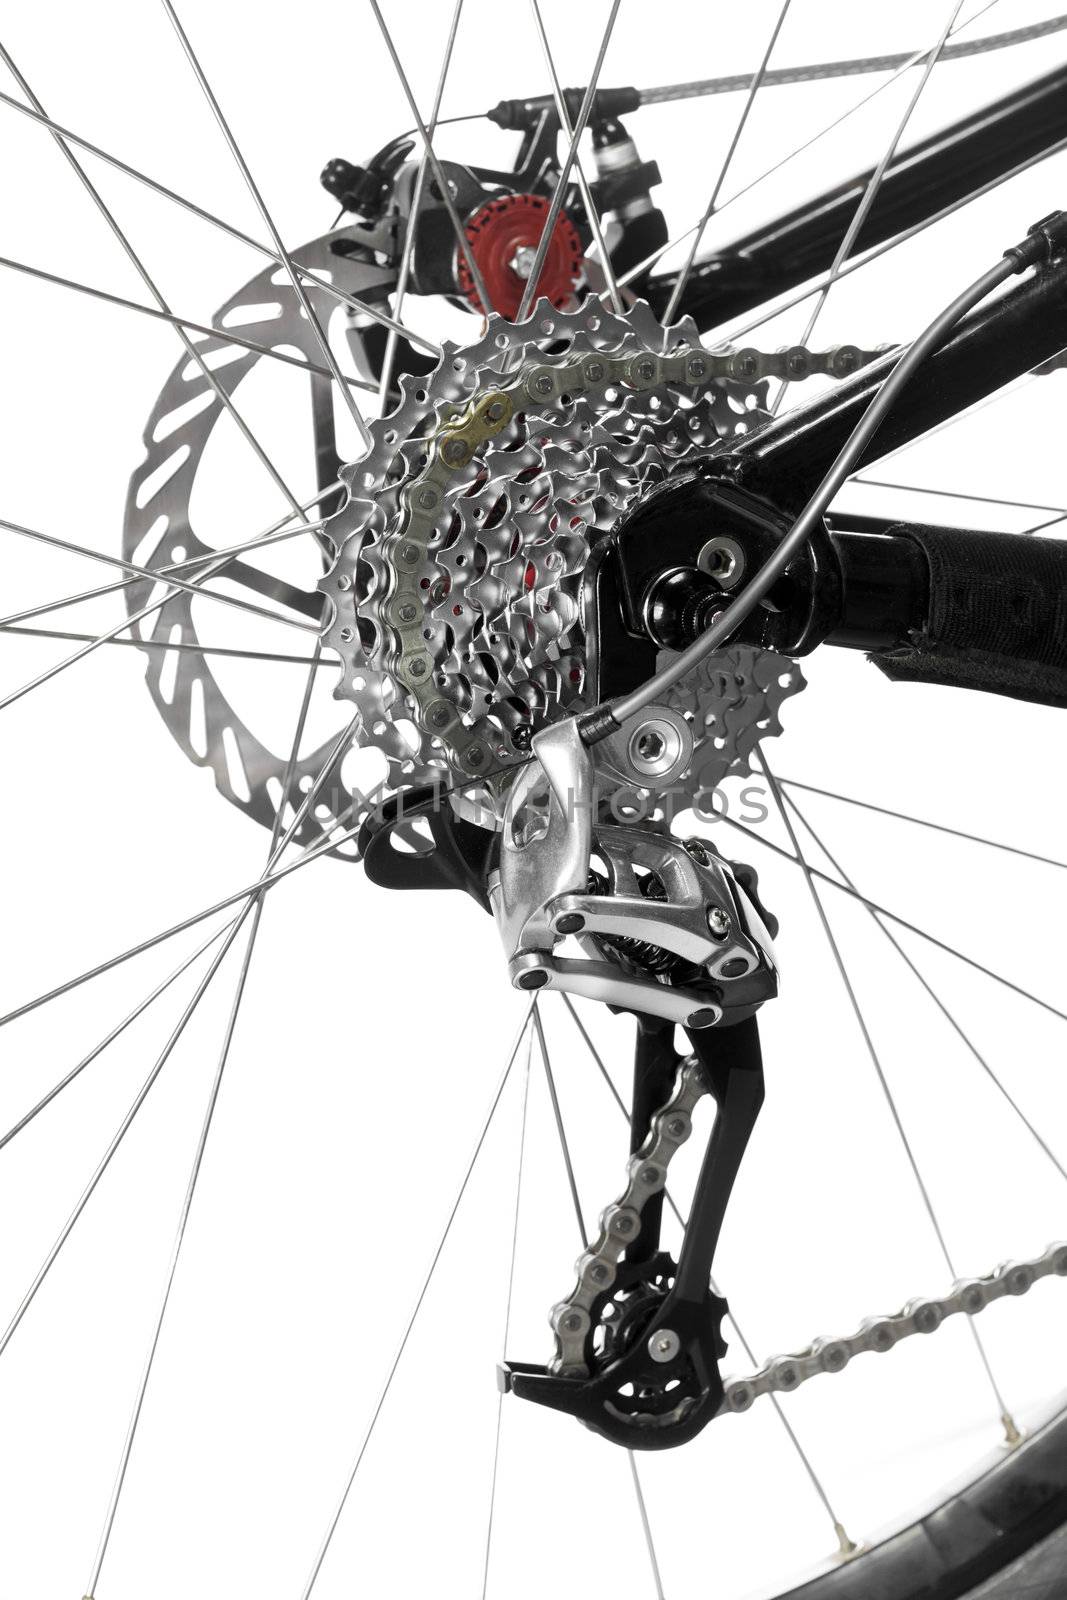 Mountain bike rear wheel detail on white background